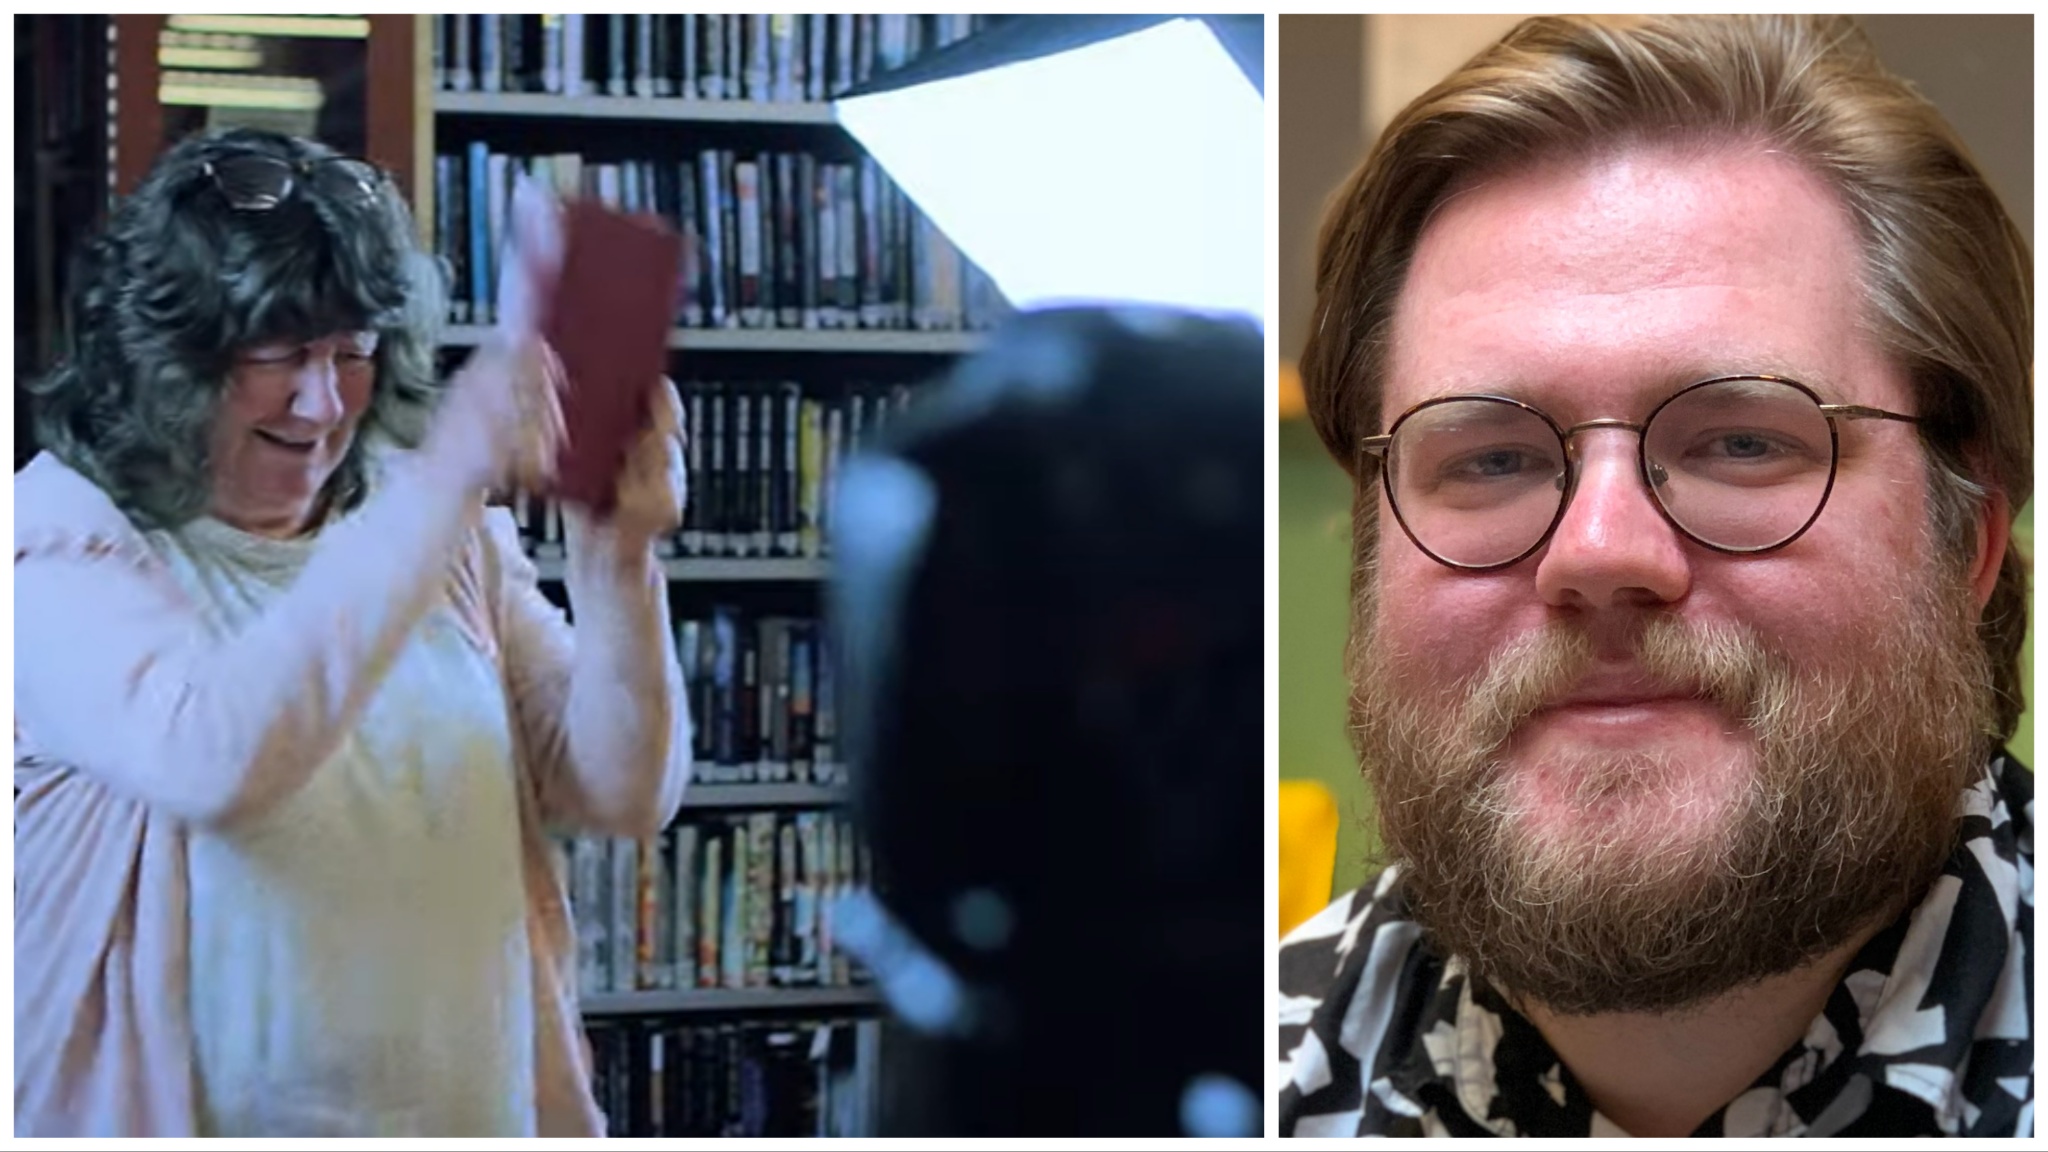 Tvådelad bild: Till vänster en bibliotekarie hötter med en bok; till höger porträttbild på en ung man med glasögon.